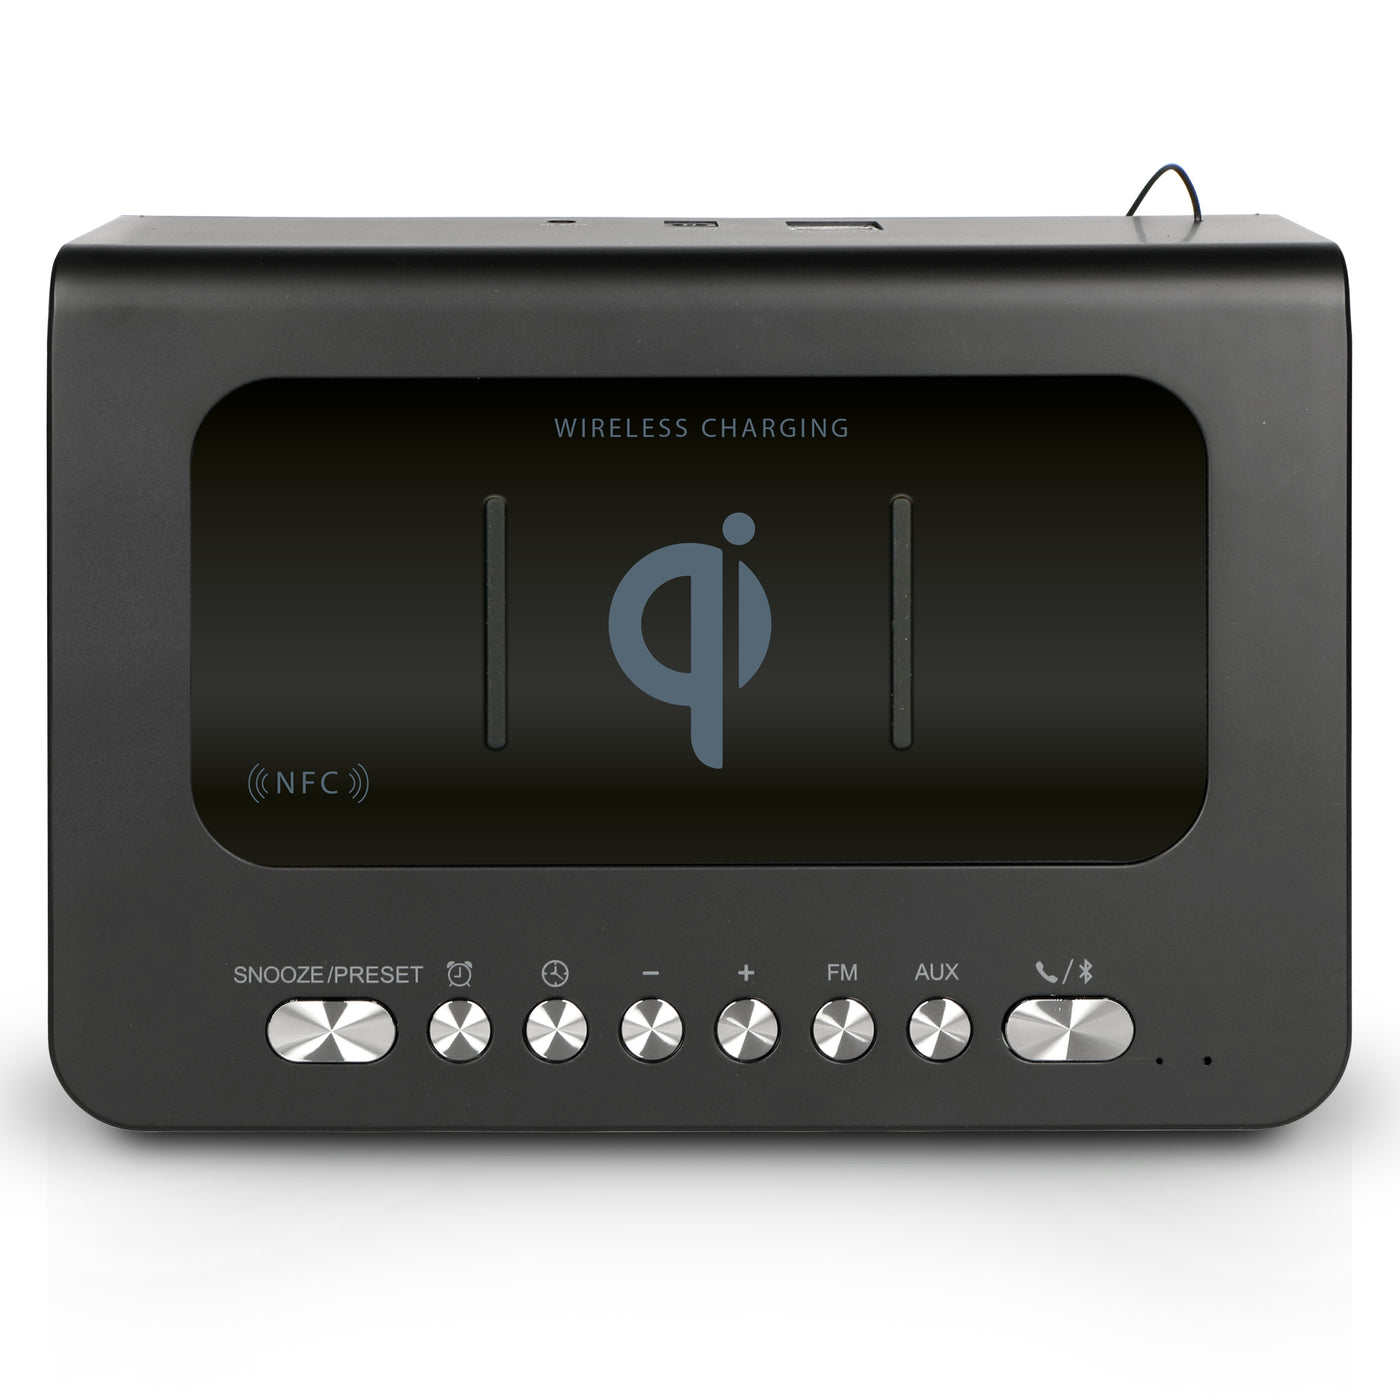 LENCO CR-580BK - Radiobudzik stereofoniczny FM z budzikiem, Bluetooth®, USB i bezprzewodową ładowarką QI - Czarny